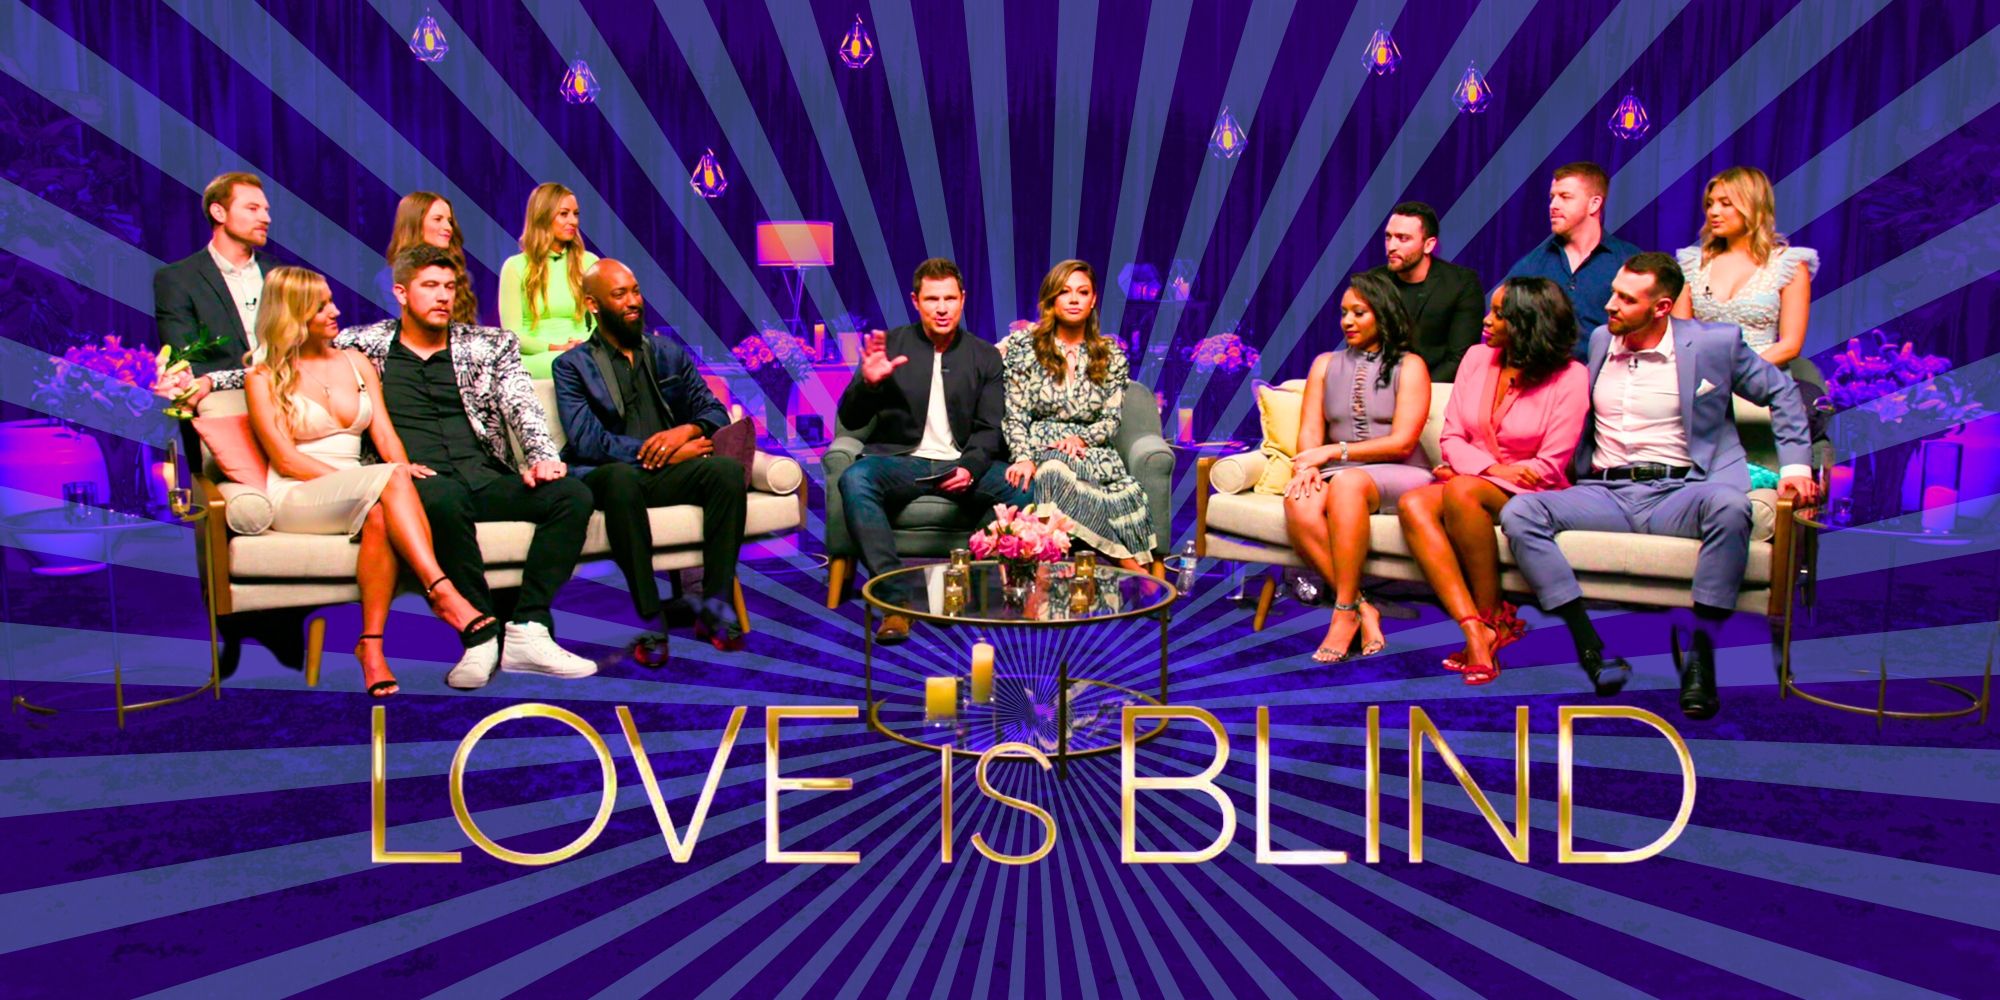   Love Is Blind, primeira temporada, elenco em foto promocional sentado em sofás com o logotipo do programa na frente